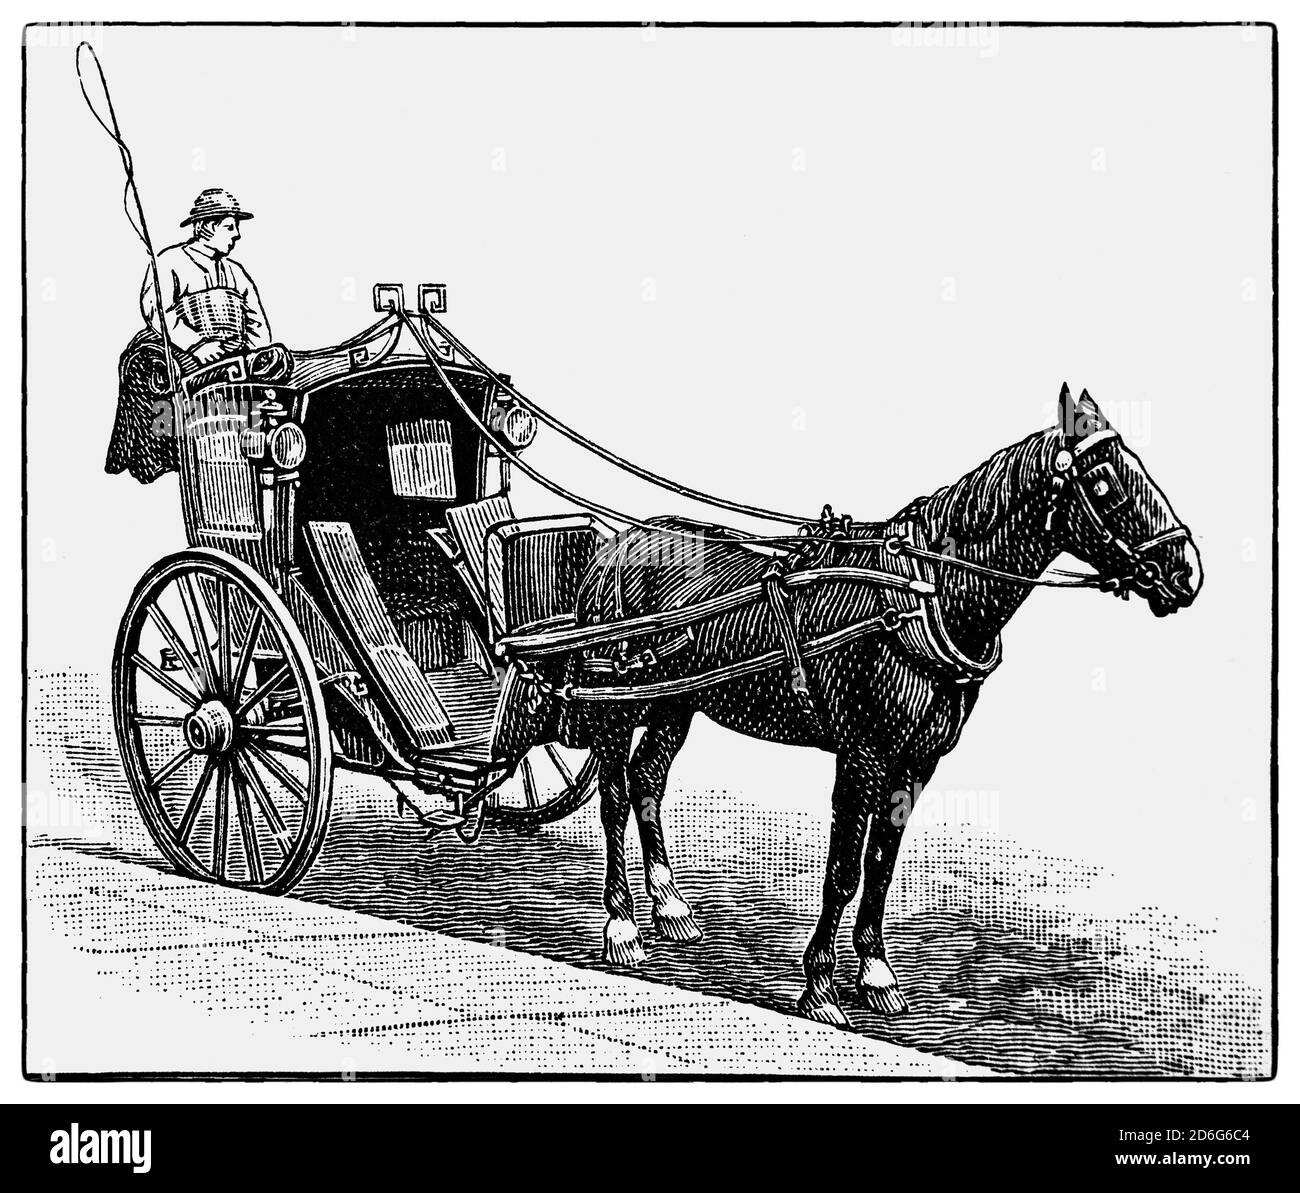 Una vista del siglo XIX de un Hansom Cab, una especie de carruaje tirado por caballos diseñado y patentado en 1834 por Joseph Hansom, un arquitecto de York. Originalmente llamada cabina de seguridad Hansom, fue diseñada para combinar velocidad con seguridad, con un centro de gravedad bajo para tomar curvas seguras. La cabina es un acortamiento de cabriolet, que refleja el diseño del carro. Sustituyó el carro de hackney como vehículo de alquiler; con la introducción de taxímetros mecánicos de relojería para medir tarifas, el nombre se convirtió en taxicab. Foto de stock